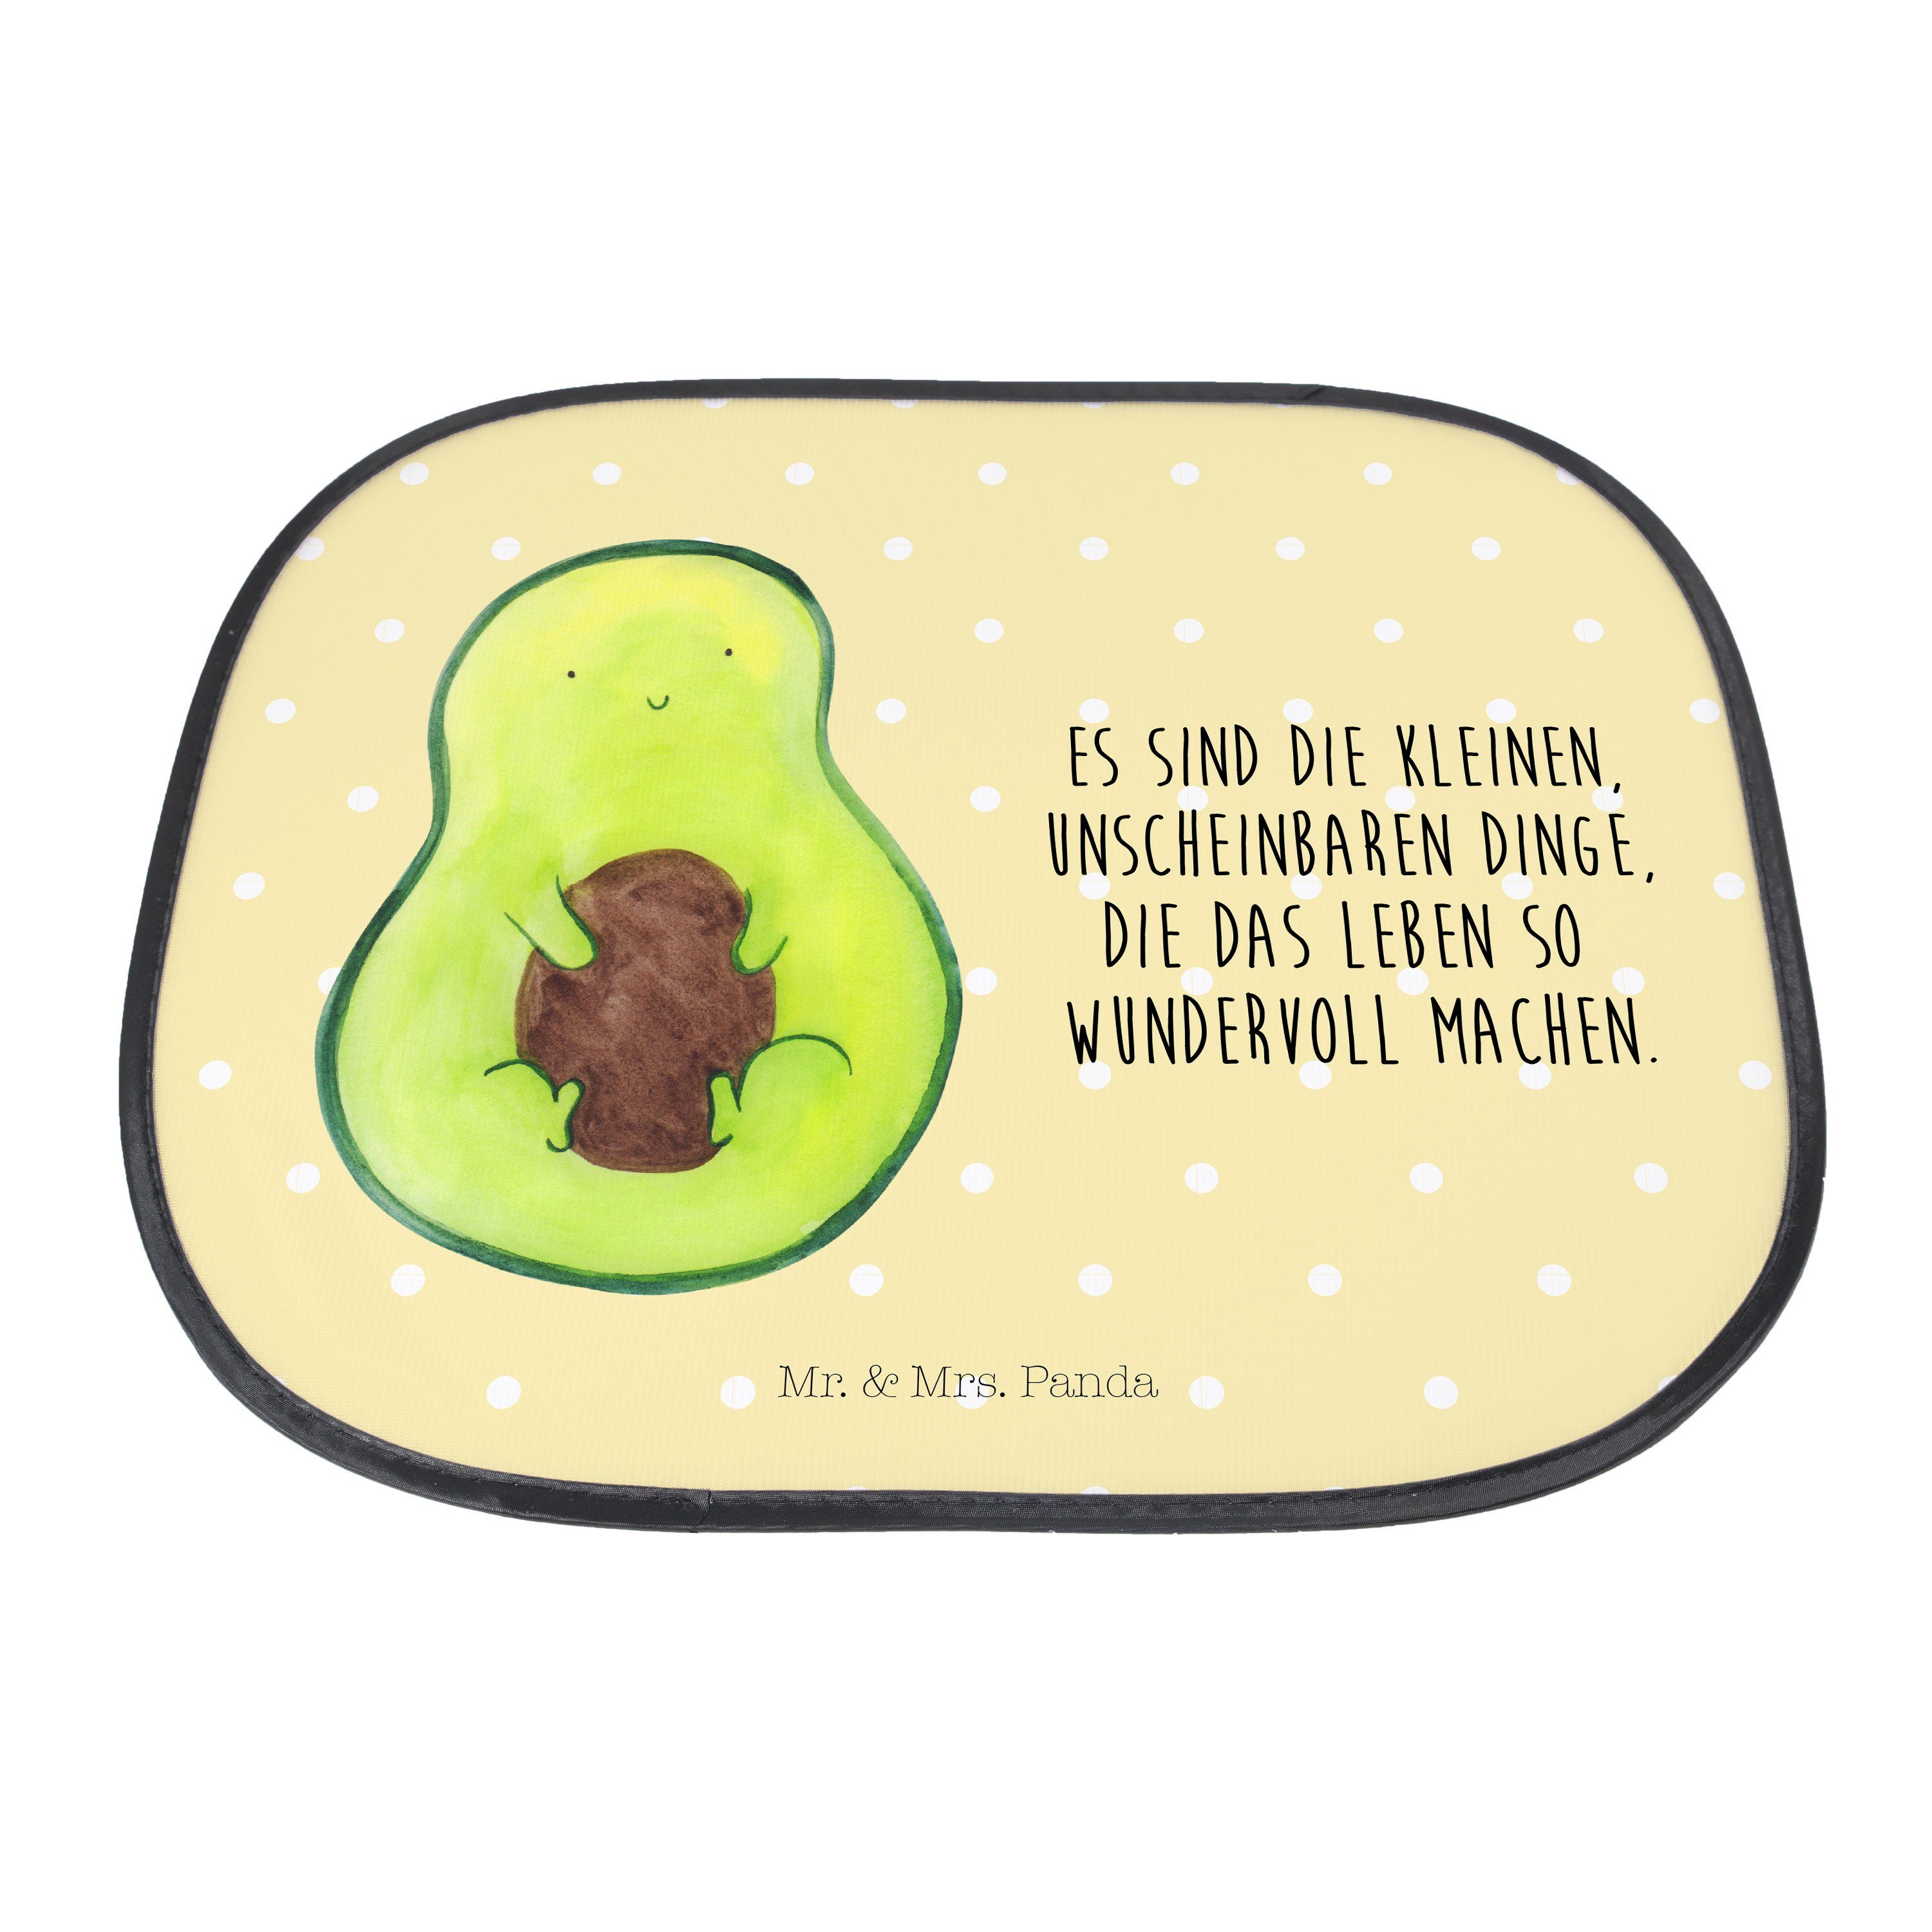 Sonnenschutz Avocado mit Kern - Geschenk, Gelb - Mr. Mrs. Panda, & Sonnenblende, Seidenmatt glücklich, Pastell